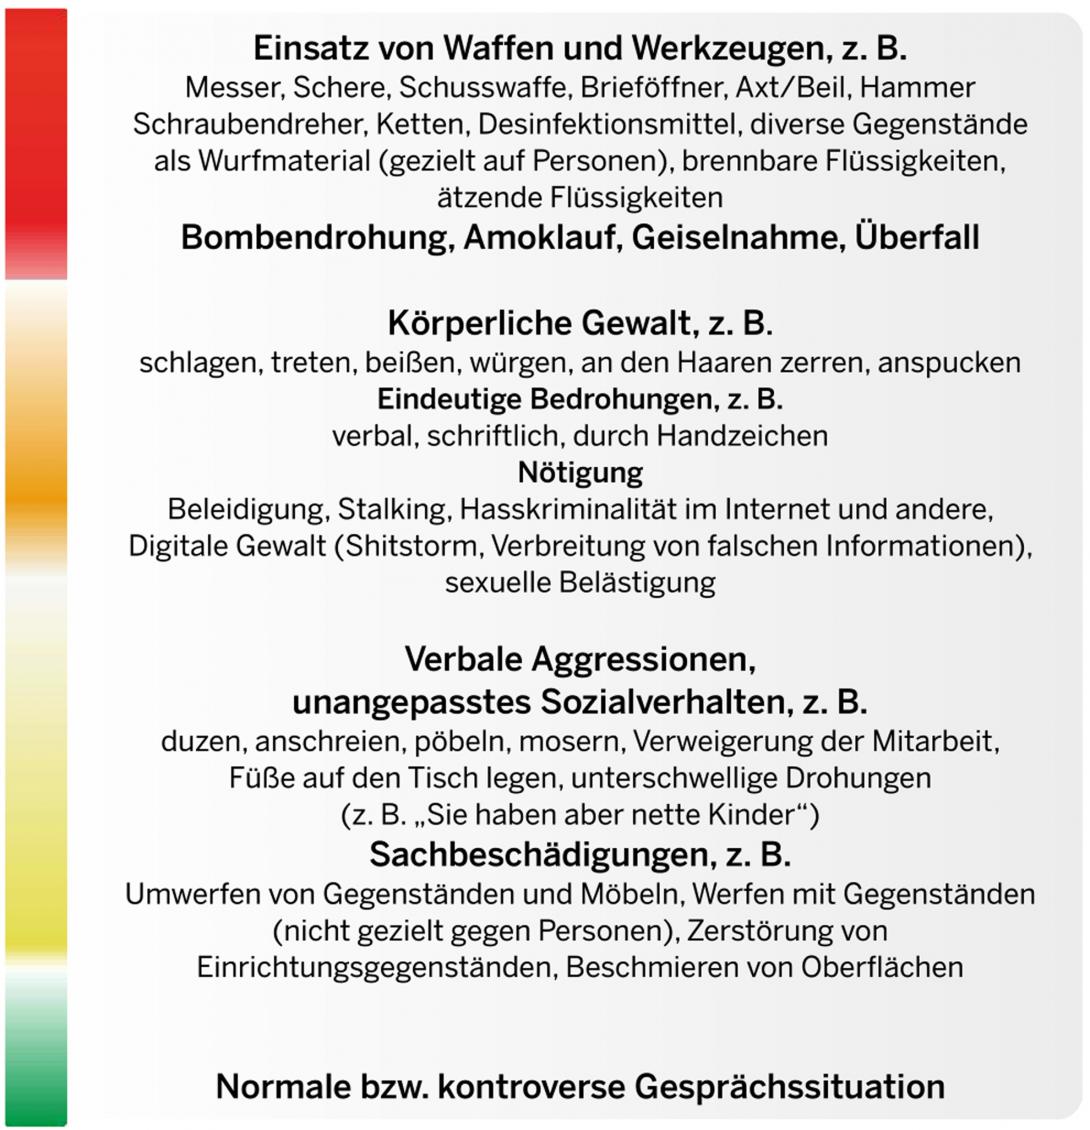 Modellgrafik Aachener Modell mit den Unterscheidungen in vier Kategorien von Gewalt.